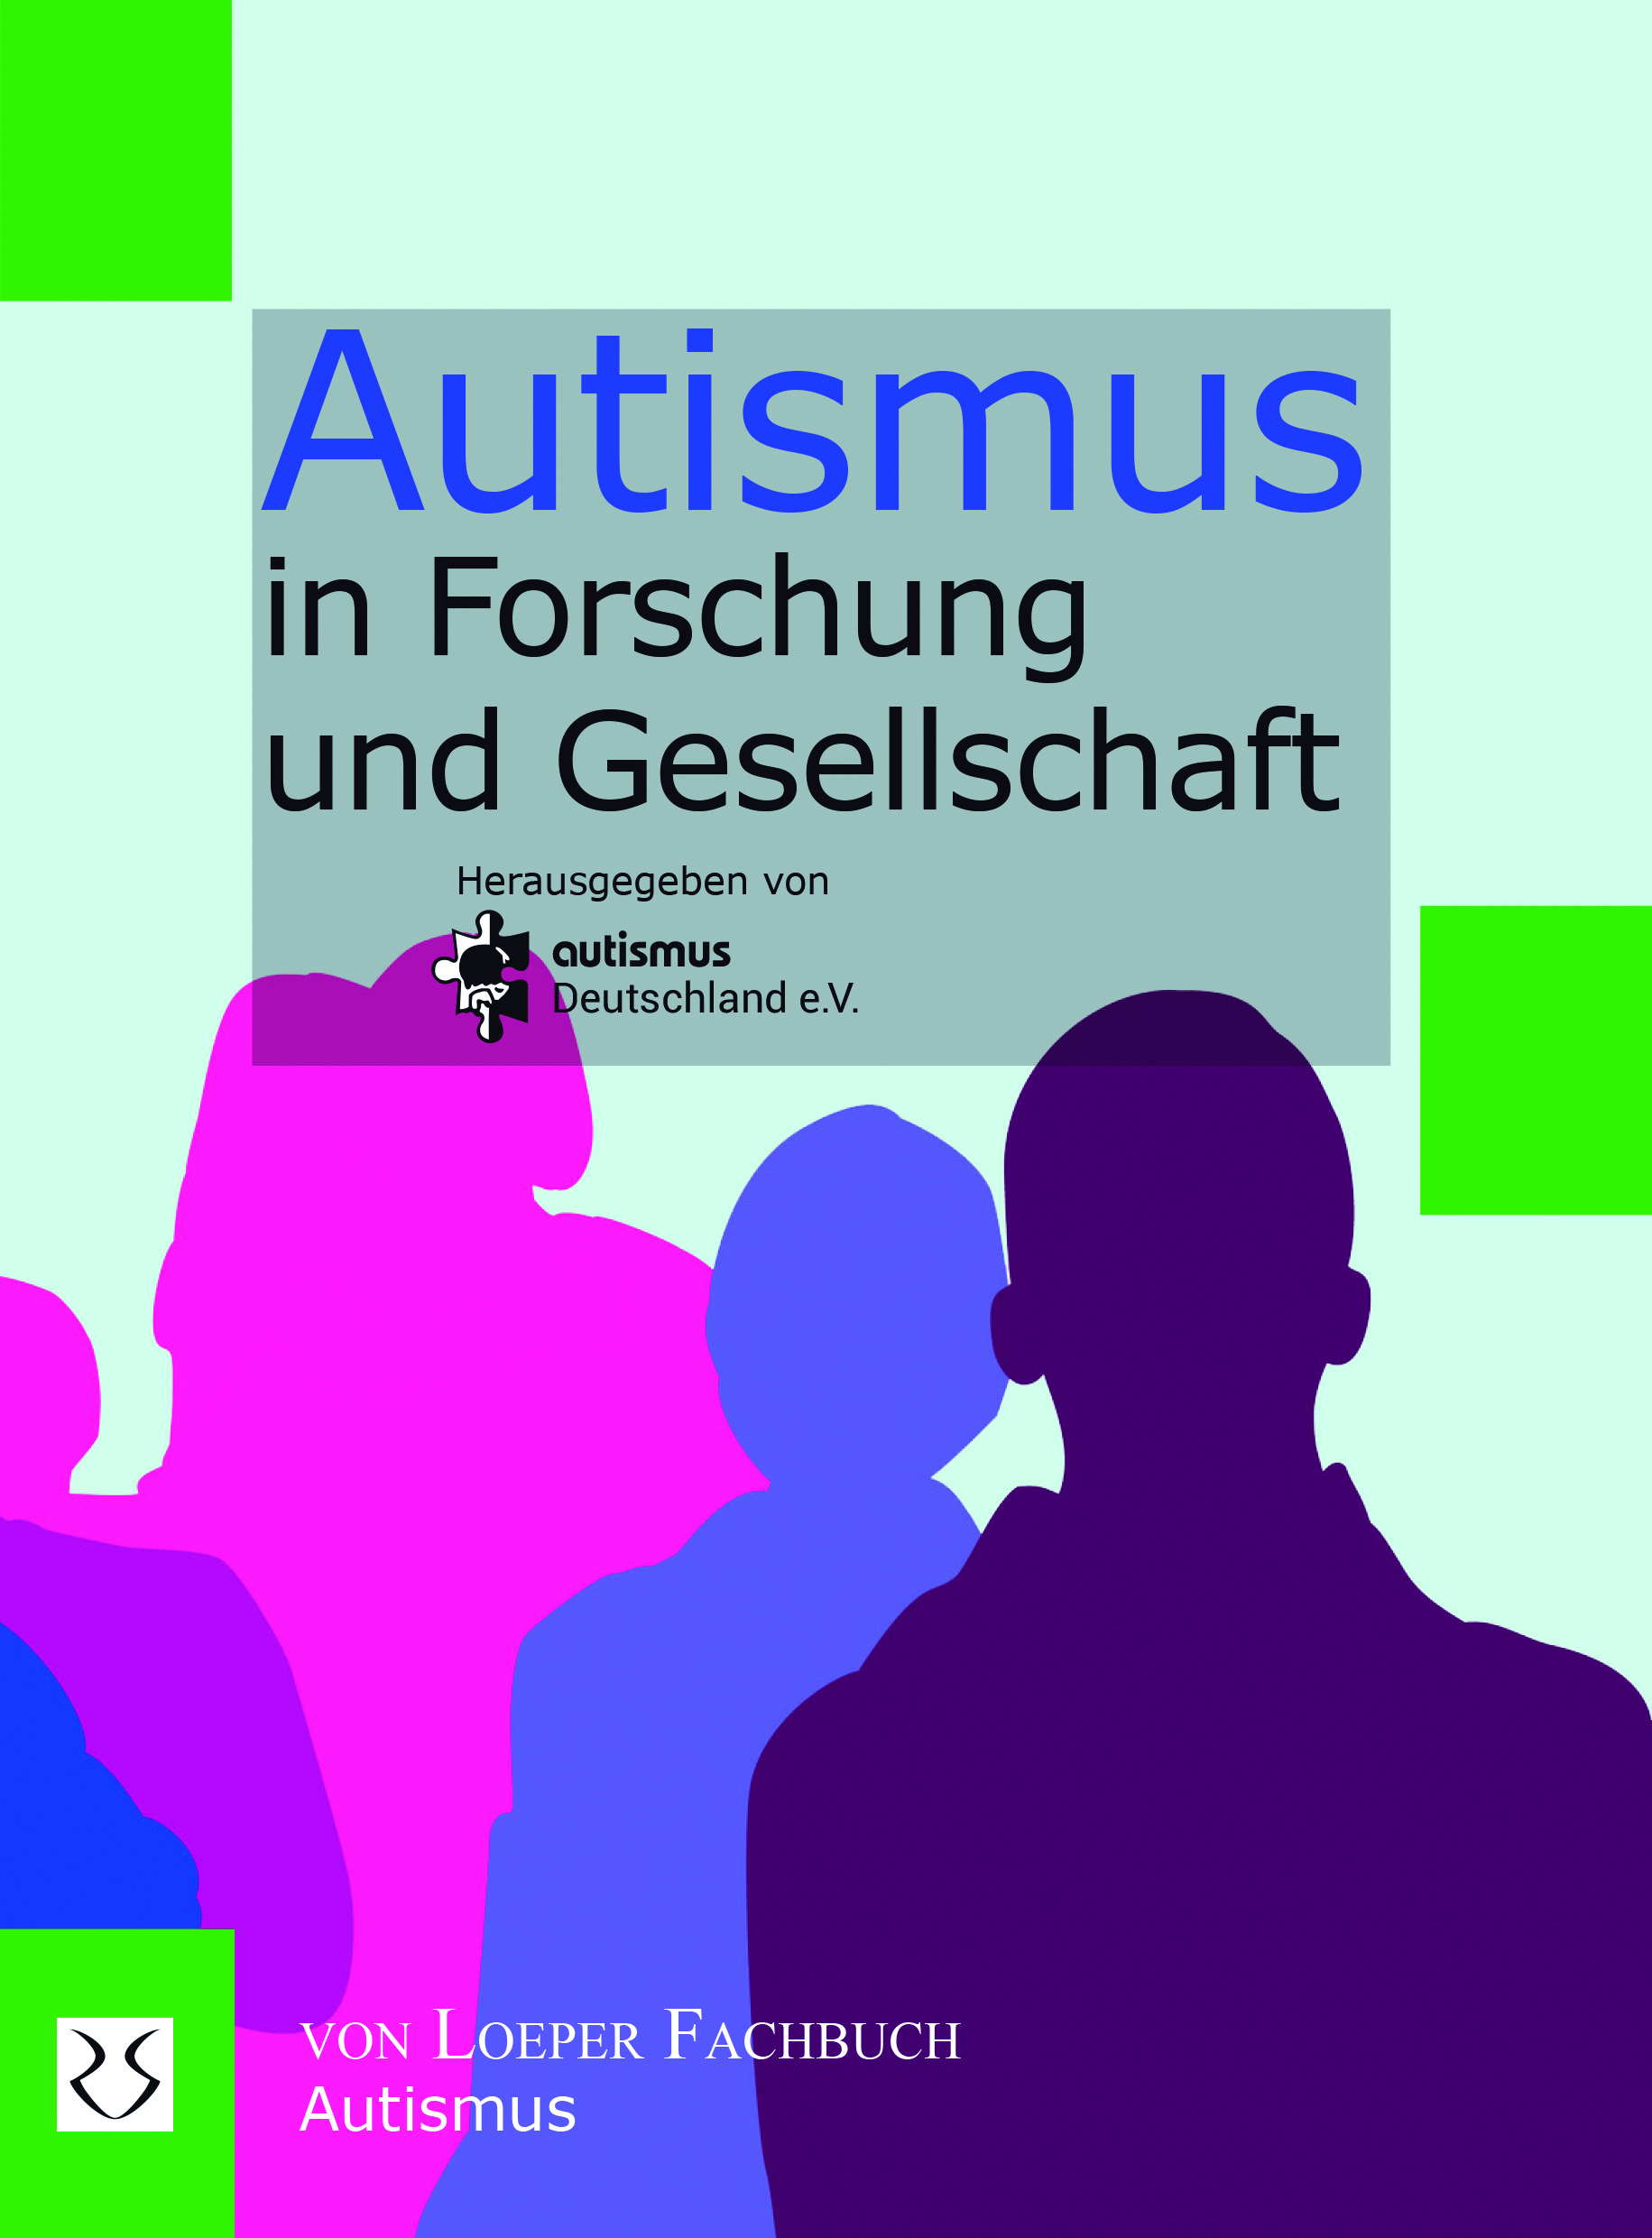 Bundesverband autismus Deutschland e. V.(Hrsg.): Autismus in Forschung und Gesellschaft